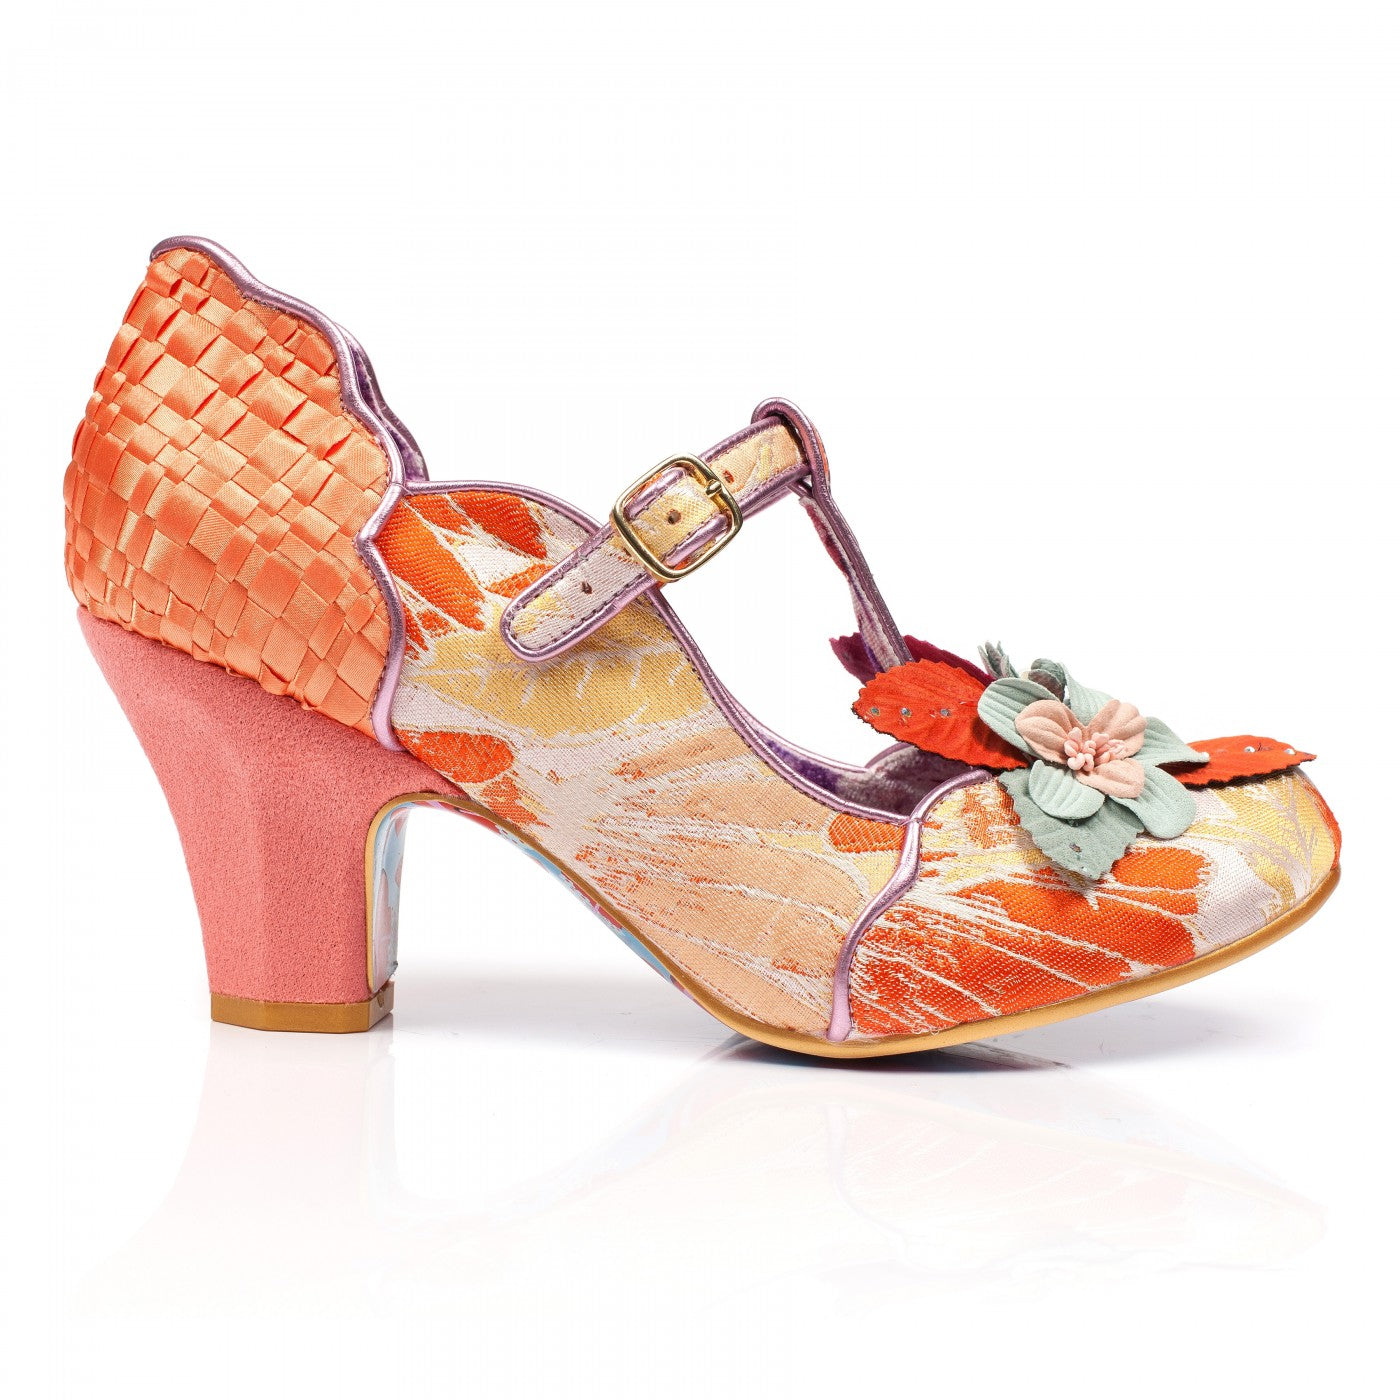 Windermere Orange – Lottie's Shoeroom Ltd